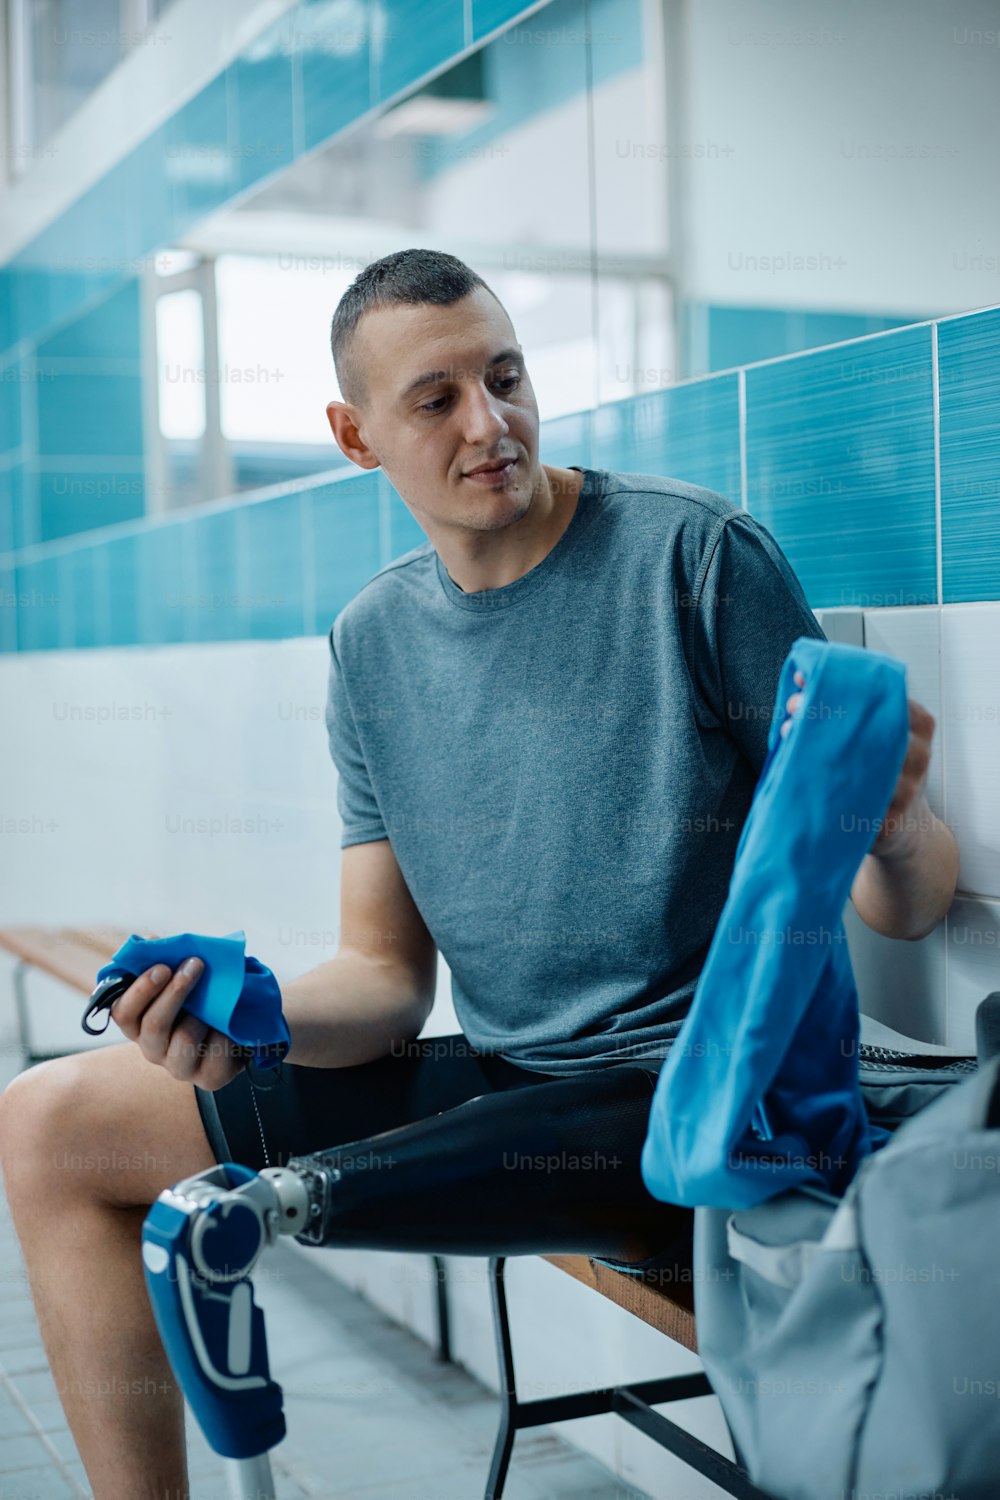 Jovem atleta com uma prótese de perna se preparando para o treinamento de natação no vestiário.